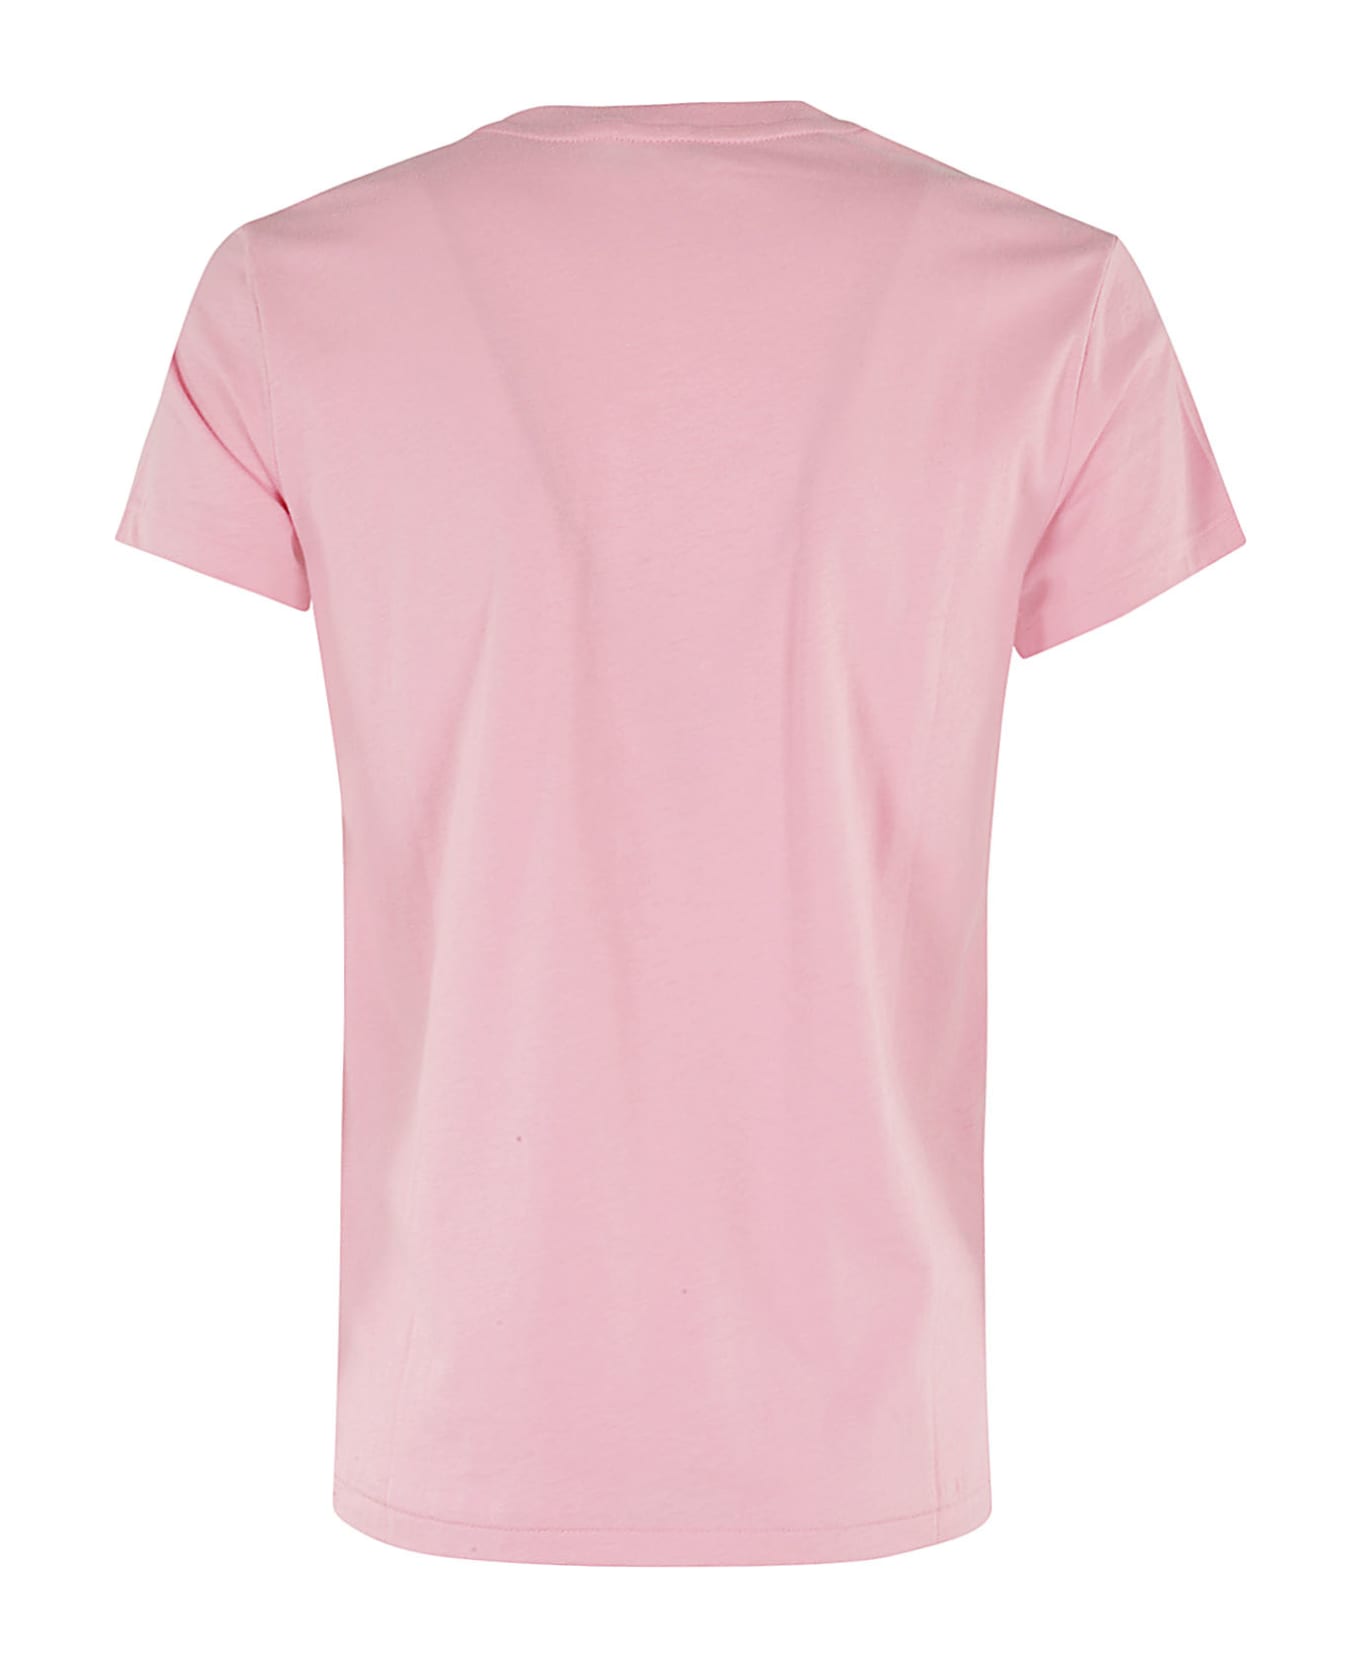 Polo Ralph Lauren New Rltpp - Course Pink Tシャツ